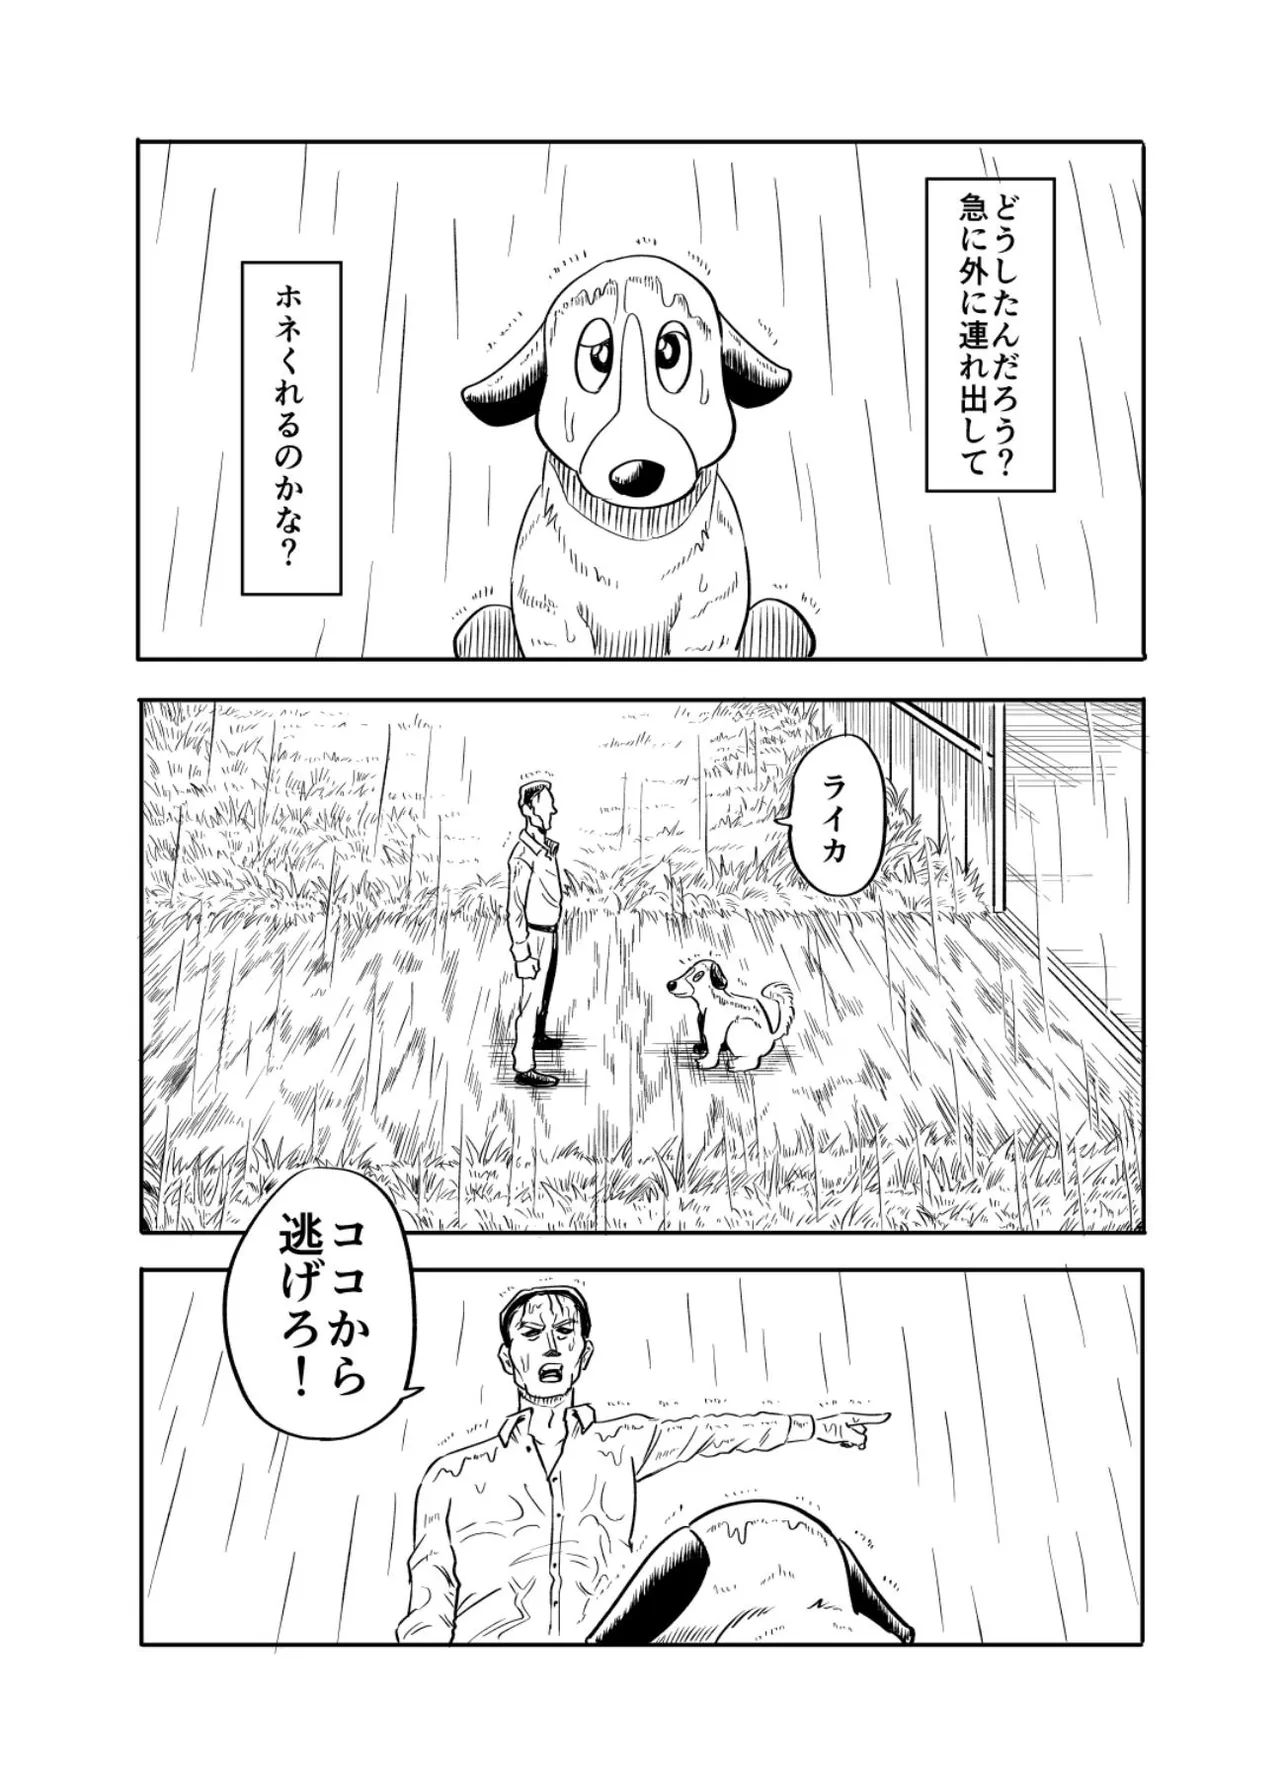 『ライカ犬が幸せになる話』(9／36)